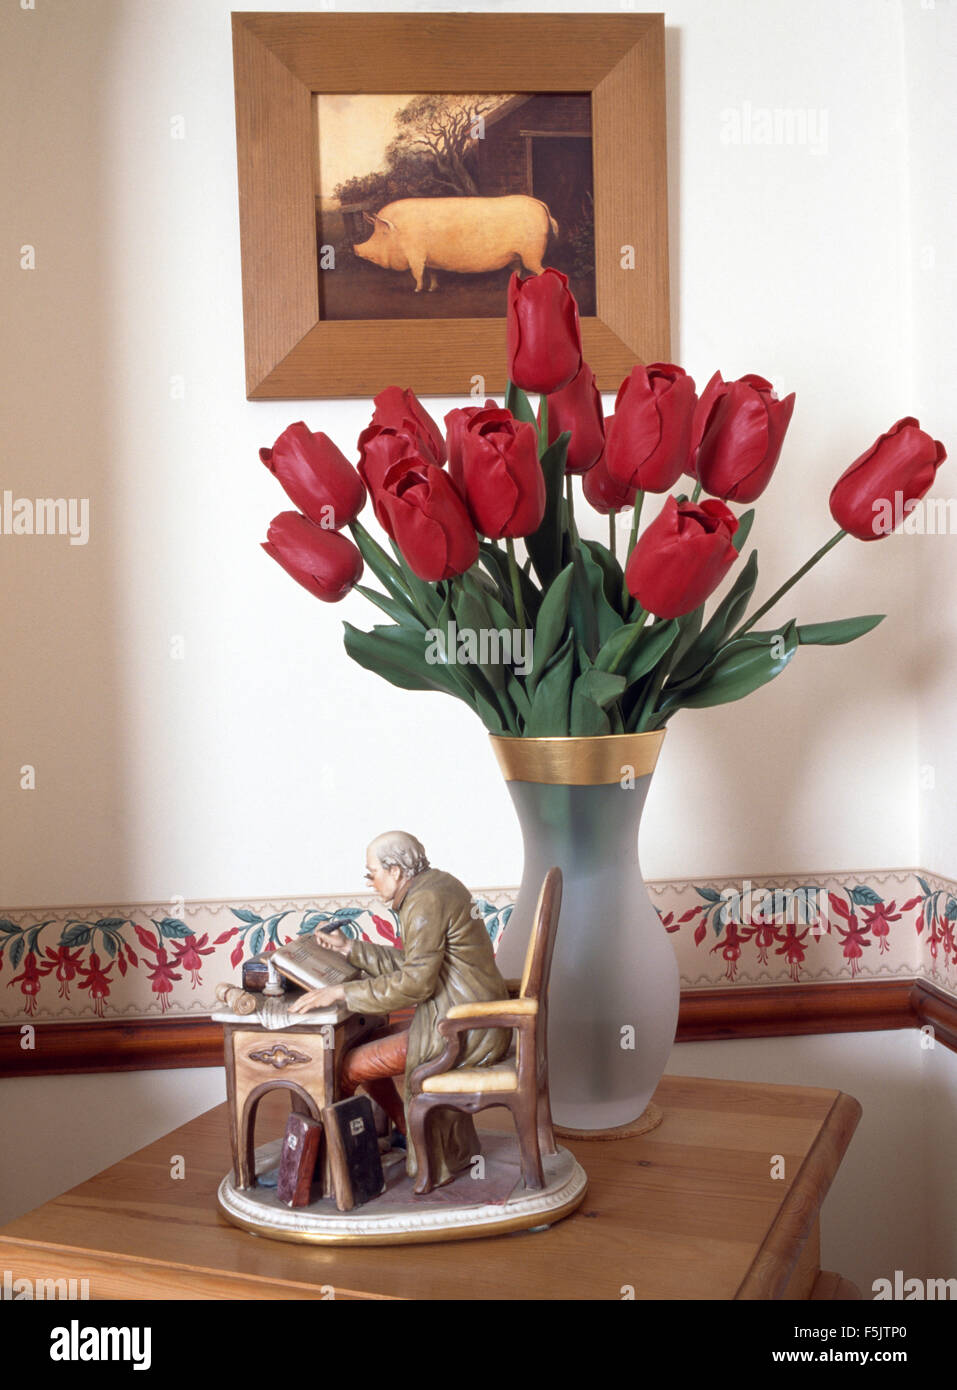 Immagine di un maiale al di sopra di un vaso di tulipani rossi e un annata di figurine di cina Foto Stock